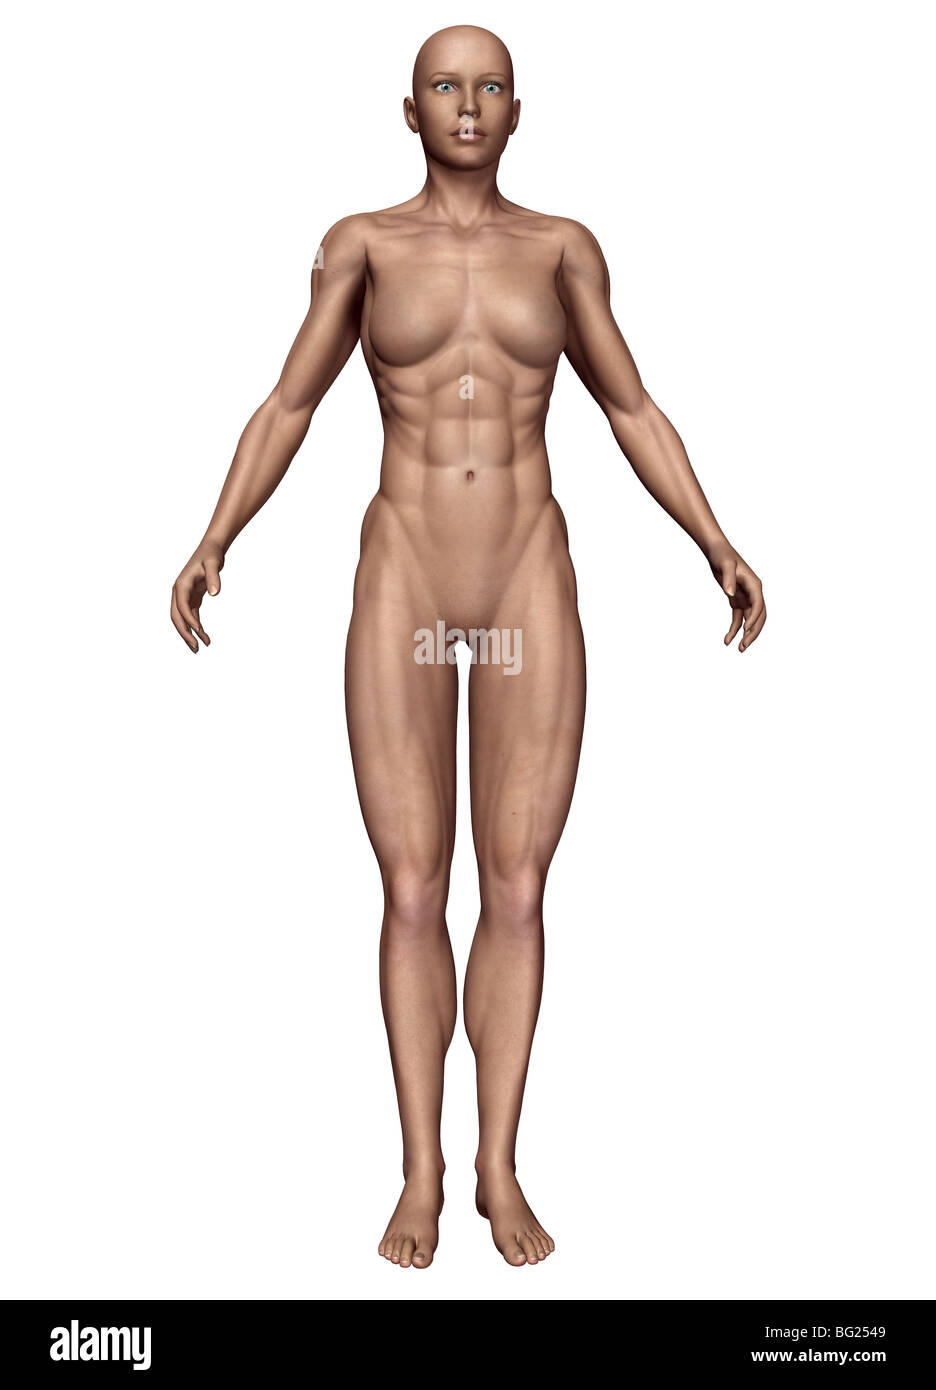 https://c8.alamy.com/comp/BG2549/illustration-of-a-female-human-body-type-mesomorph-BG2549.jpg